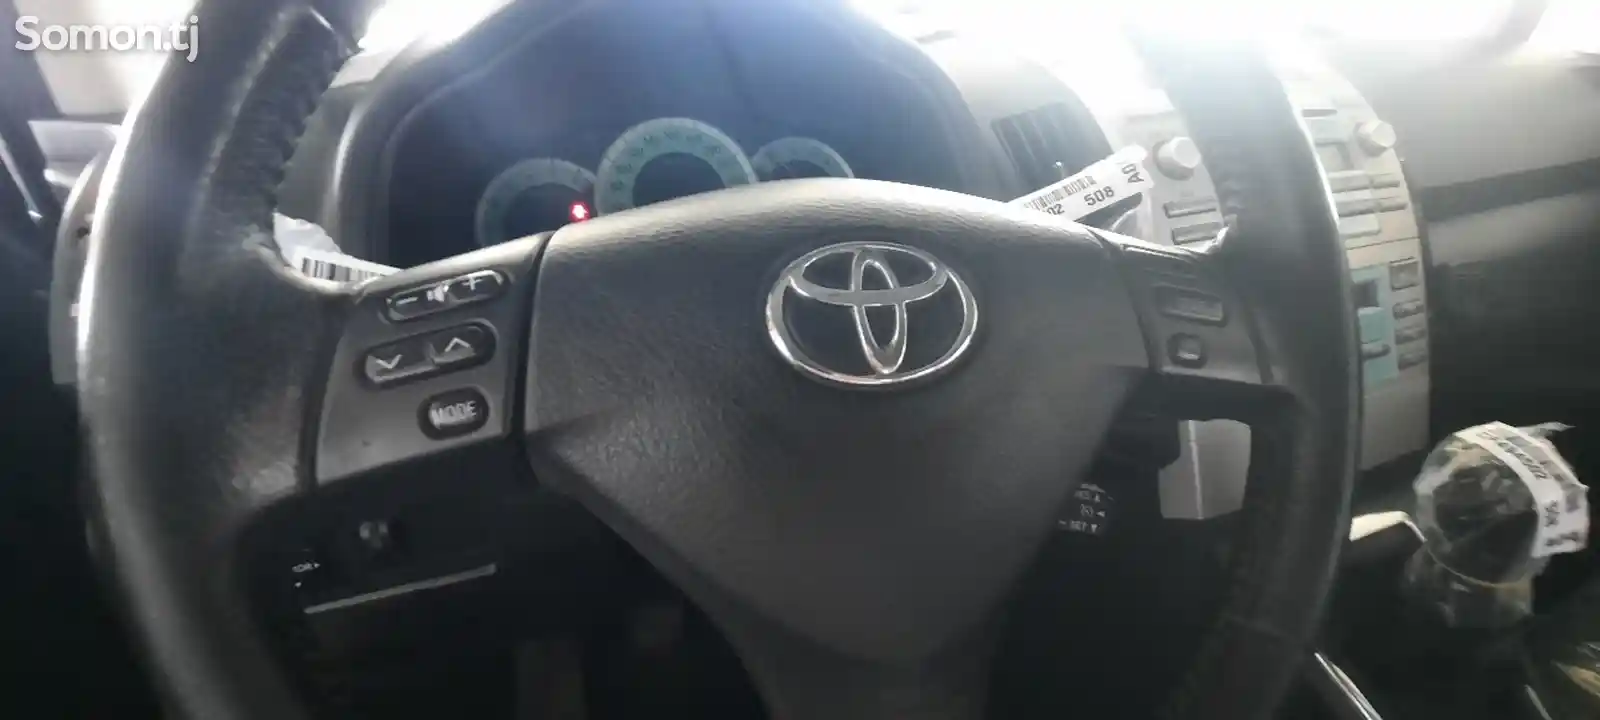 Toyota Corolla Verso, 2008-11